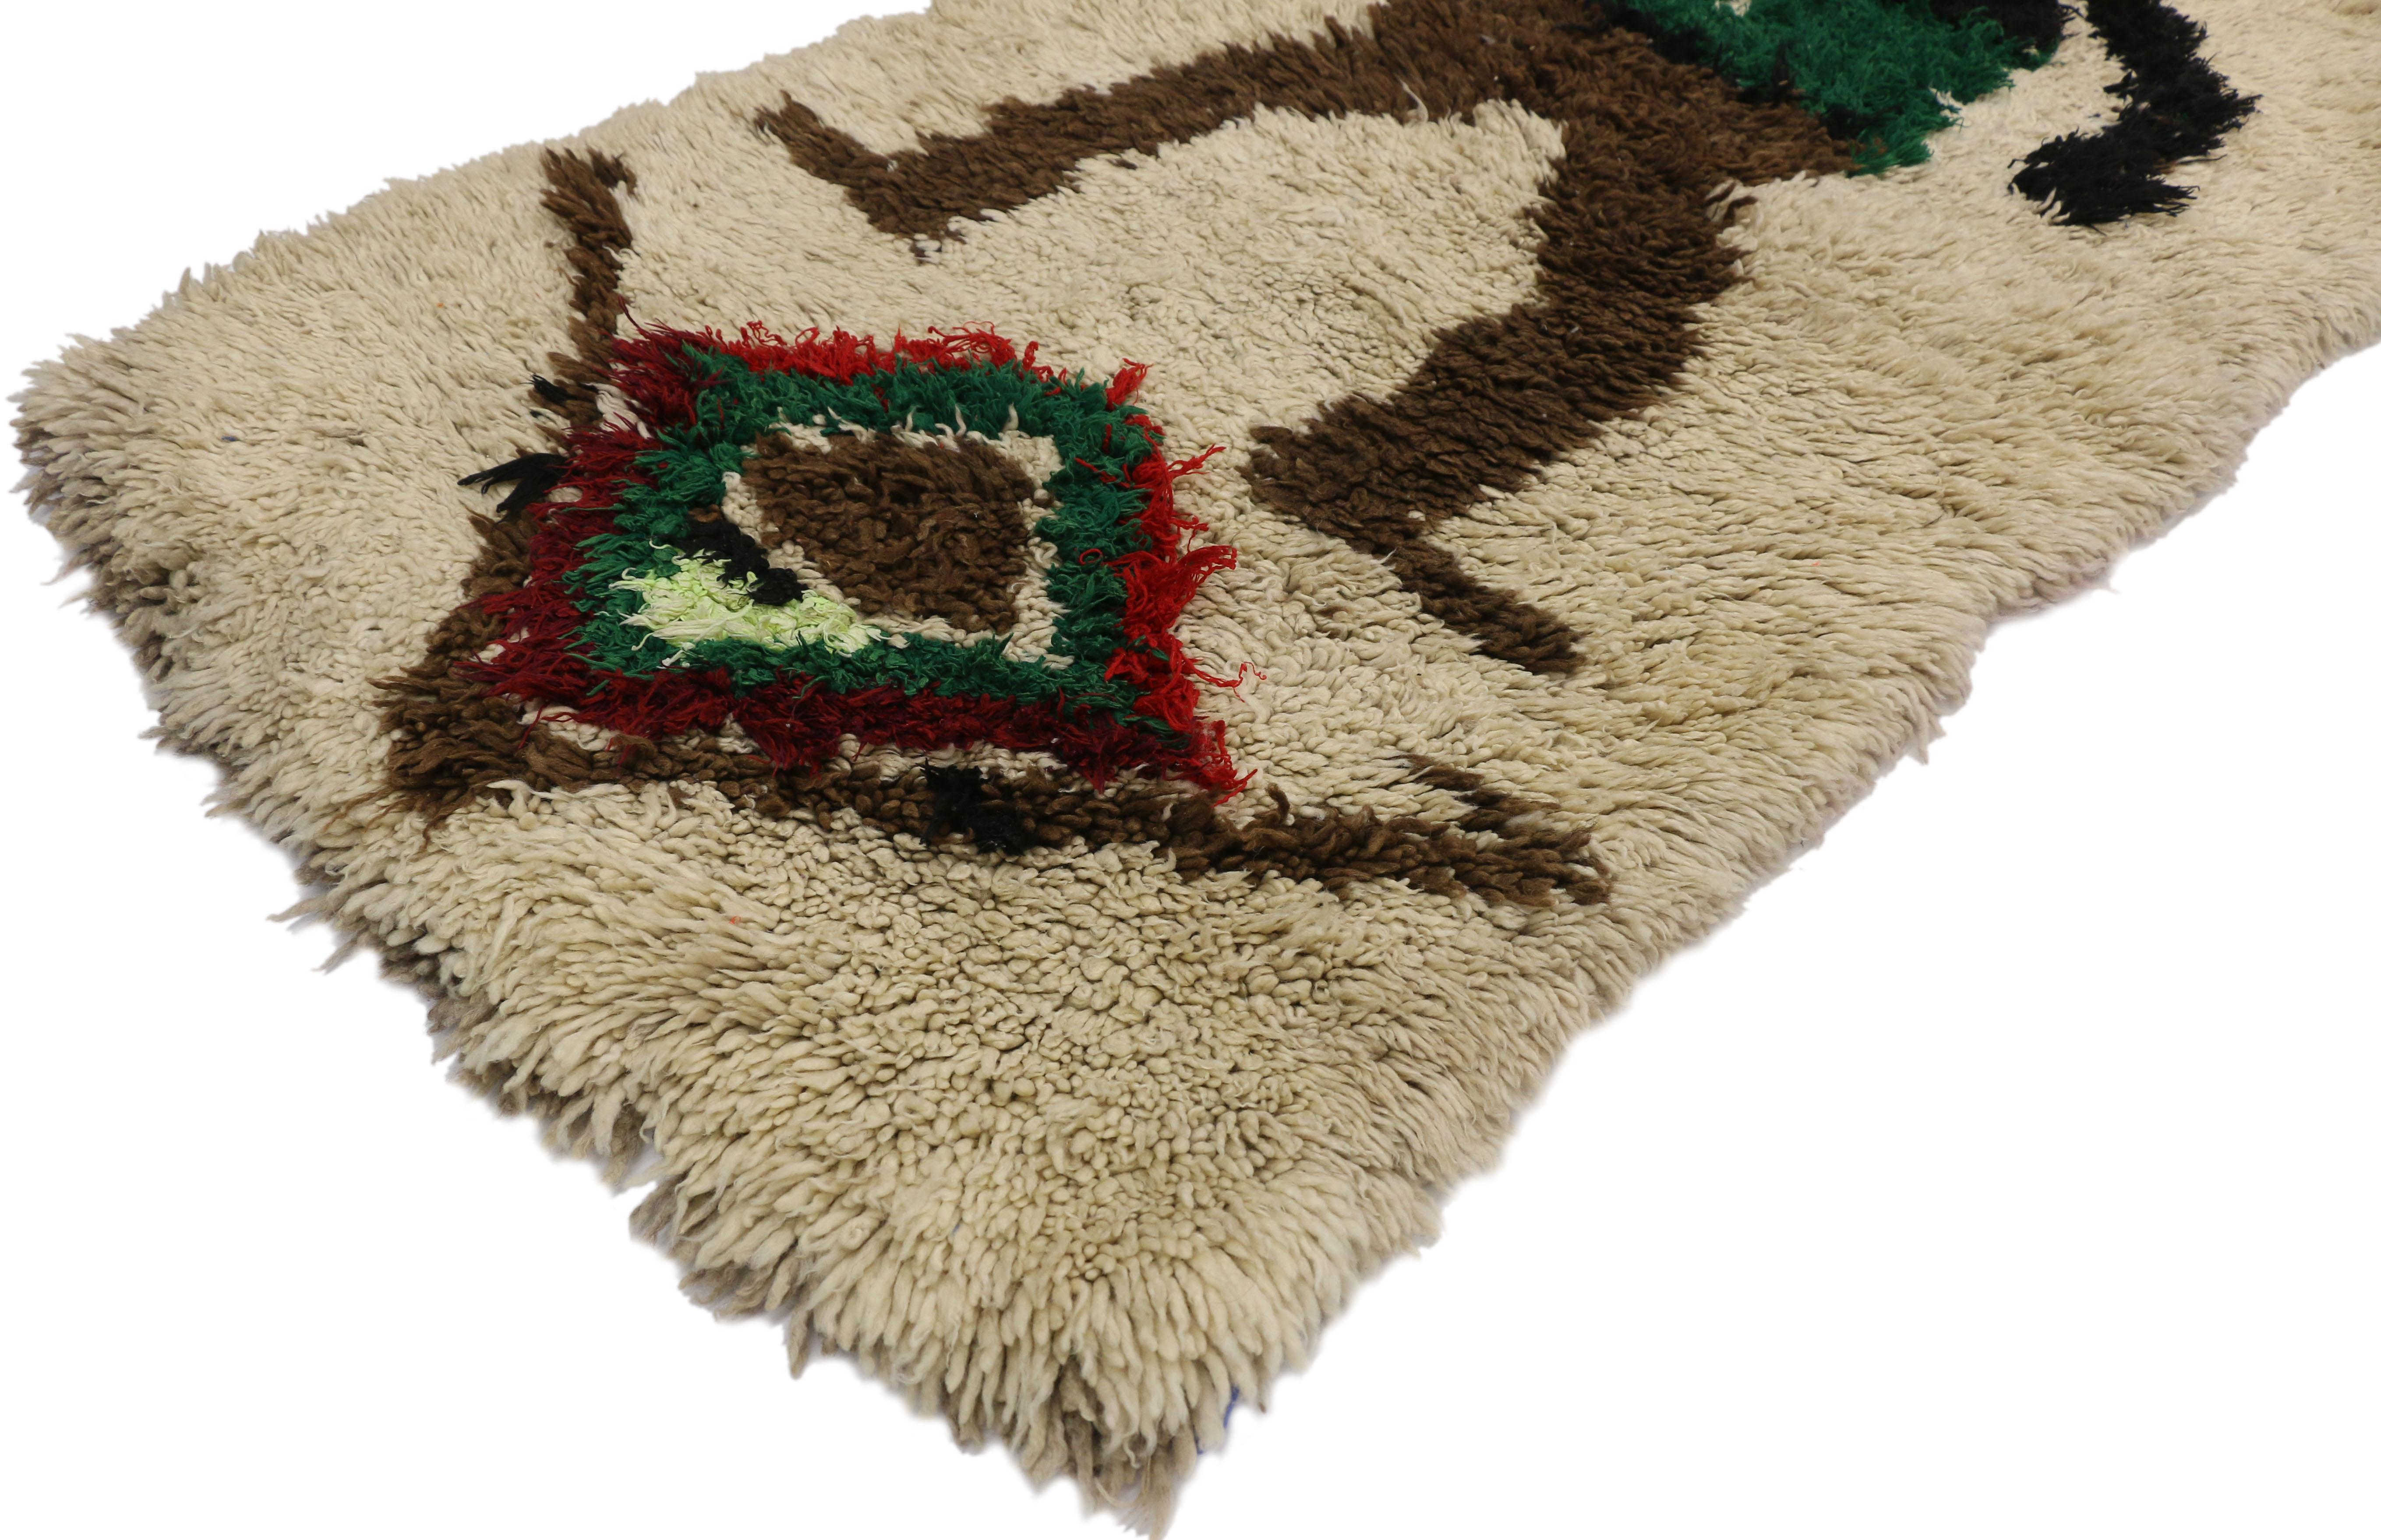 20864 Vintage Berber Boucherouite Marokkanischer Azilal Teppich mit Folk Art expressionist Tribal Stil. Dieser handgeknüpfte marokkanische Vintage-Berberteppich aus Wolle und Baumwolle im Boucherouite-Stil zeigt eine weibliche Figur mit einer